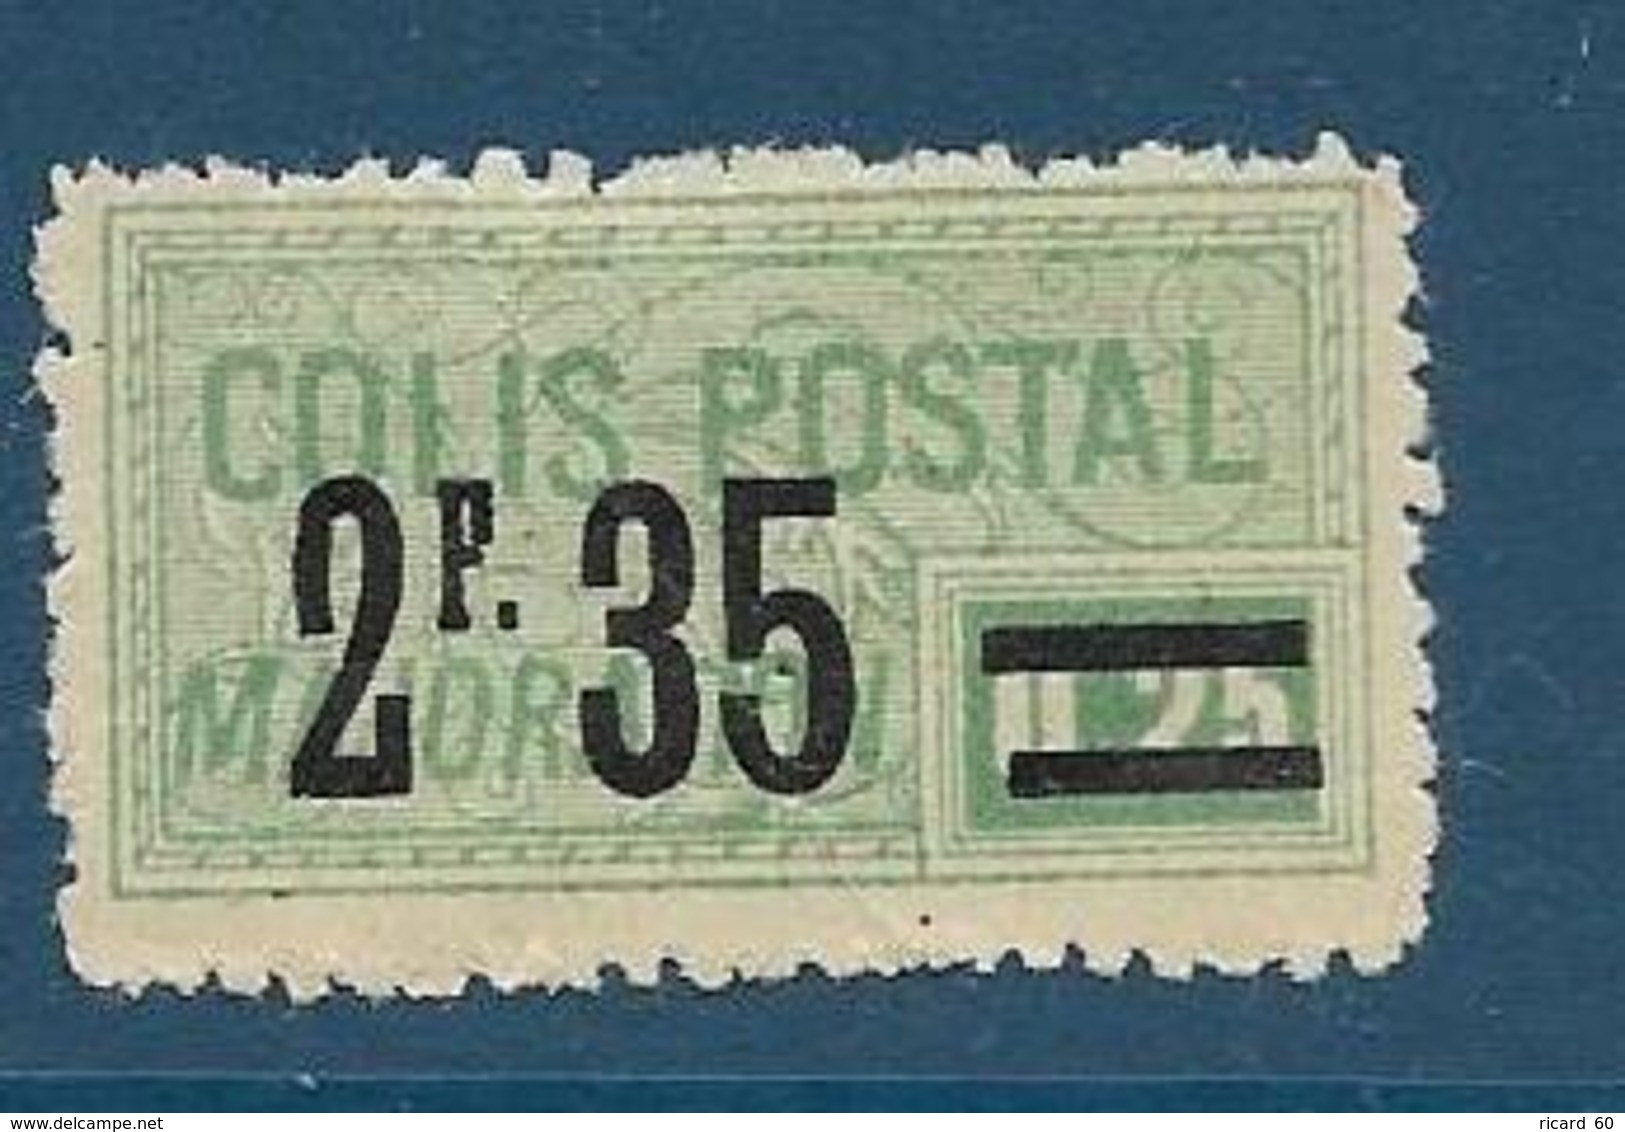 Timbre Neuf* France, N°44 Yt, Colis Postaux, Majoration, ,1918, 2.35 Sur 0.25, Charnière, - Neufs